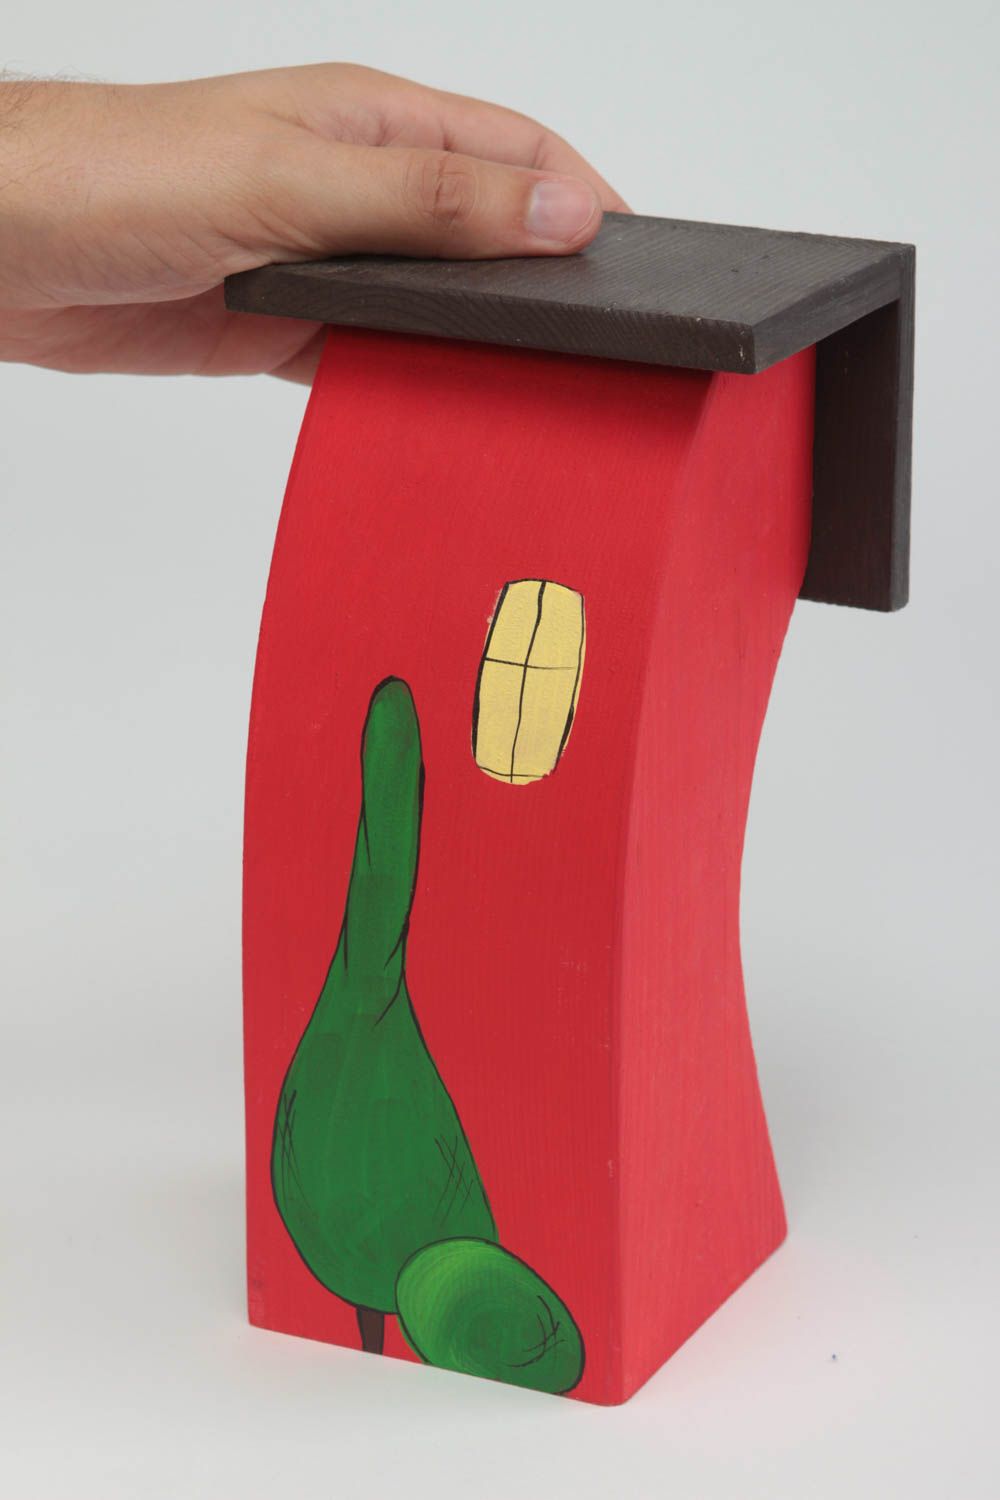 Фигурка из дерева домик высокий яркий красный с окошками красивый ручной работы фото 5